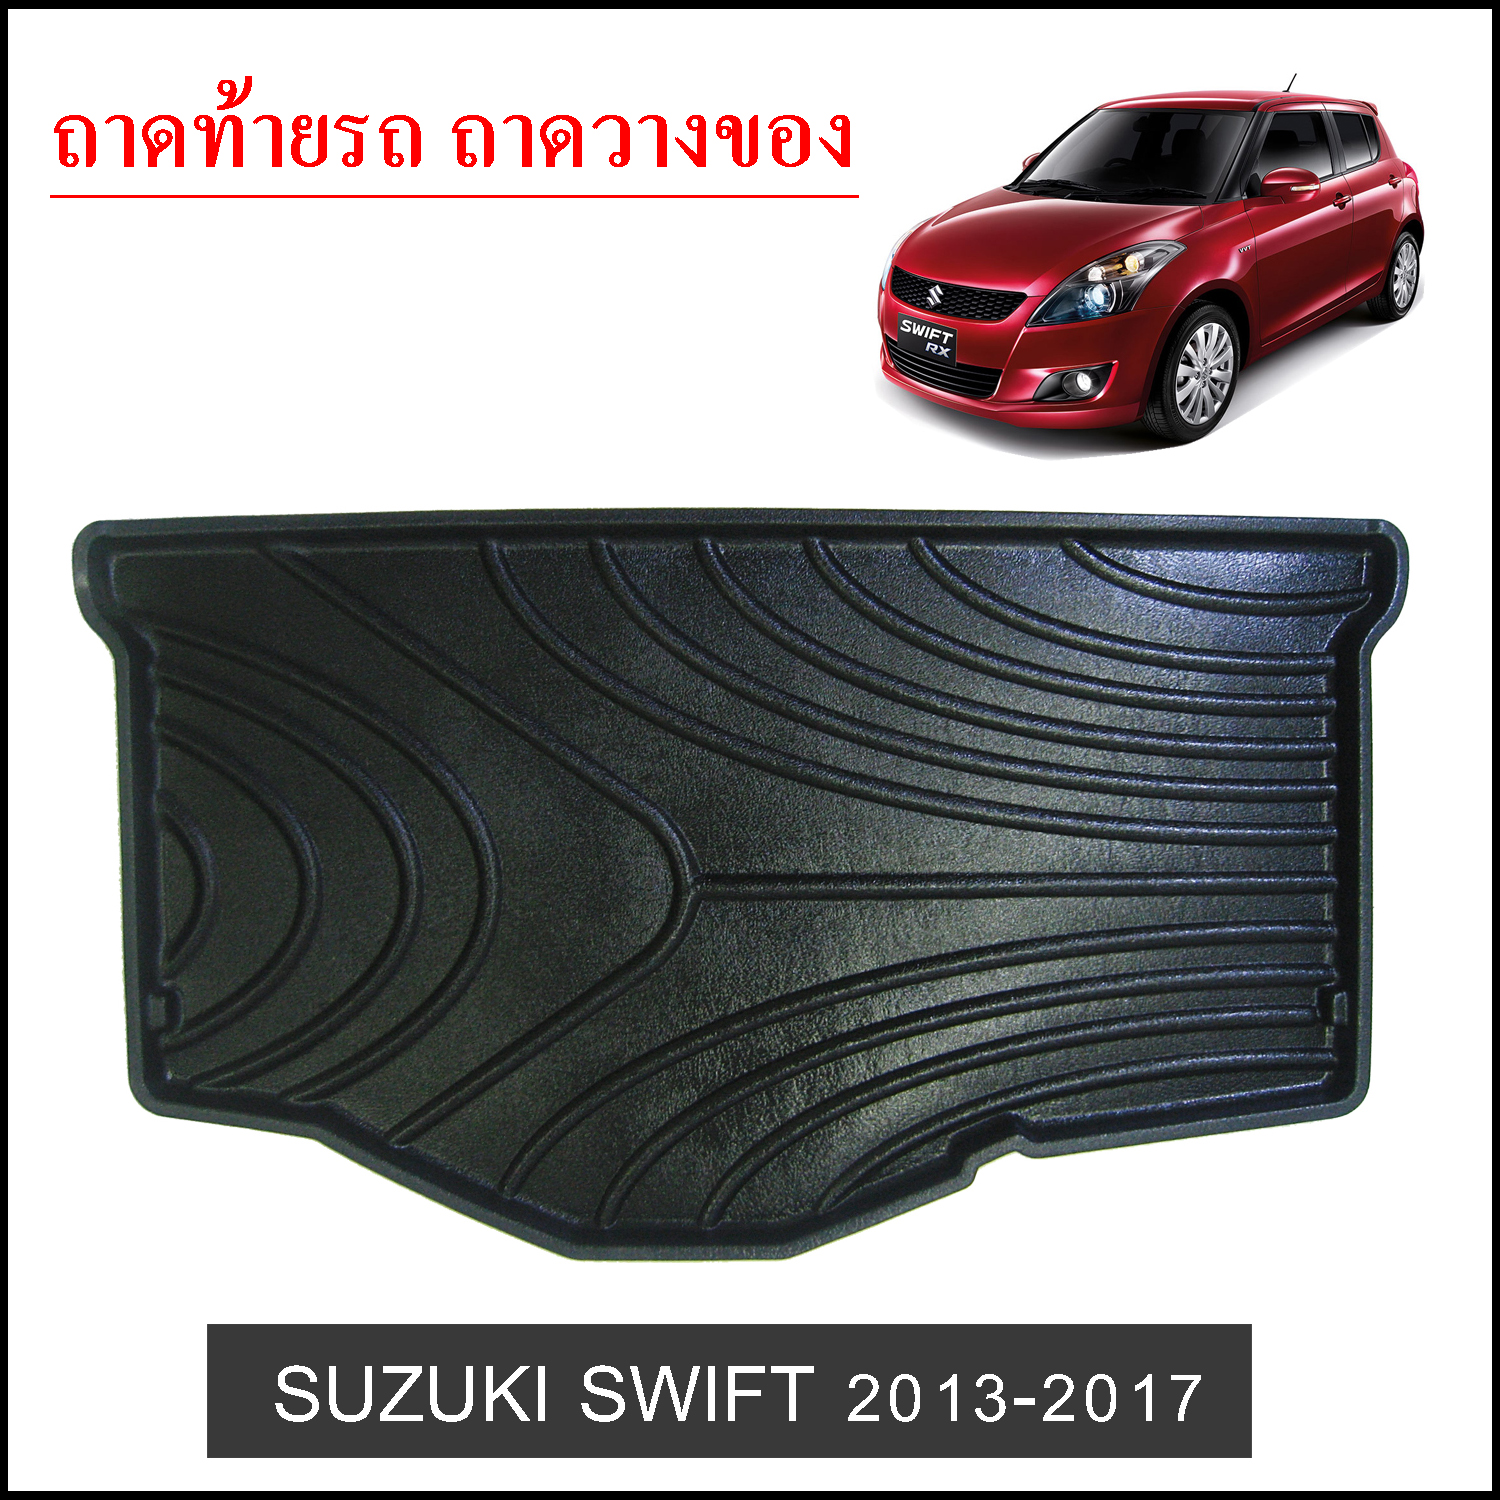 Suzuki Swift 2013-2017